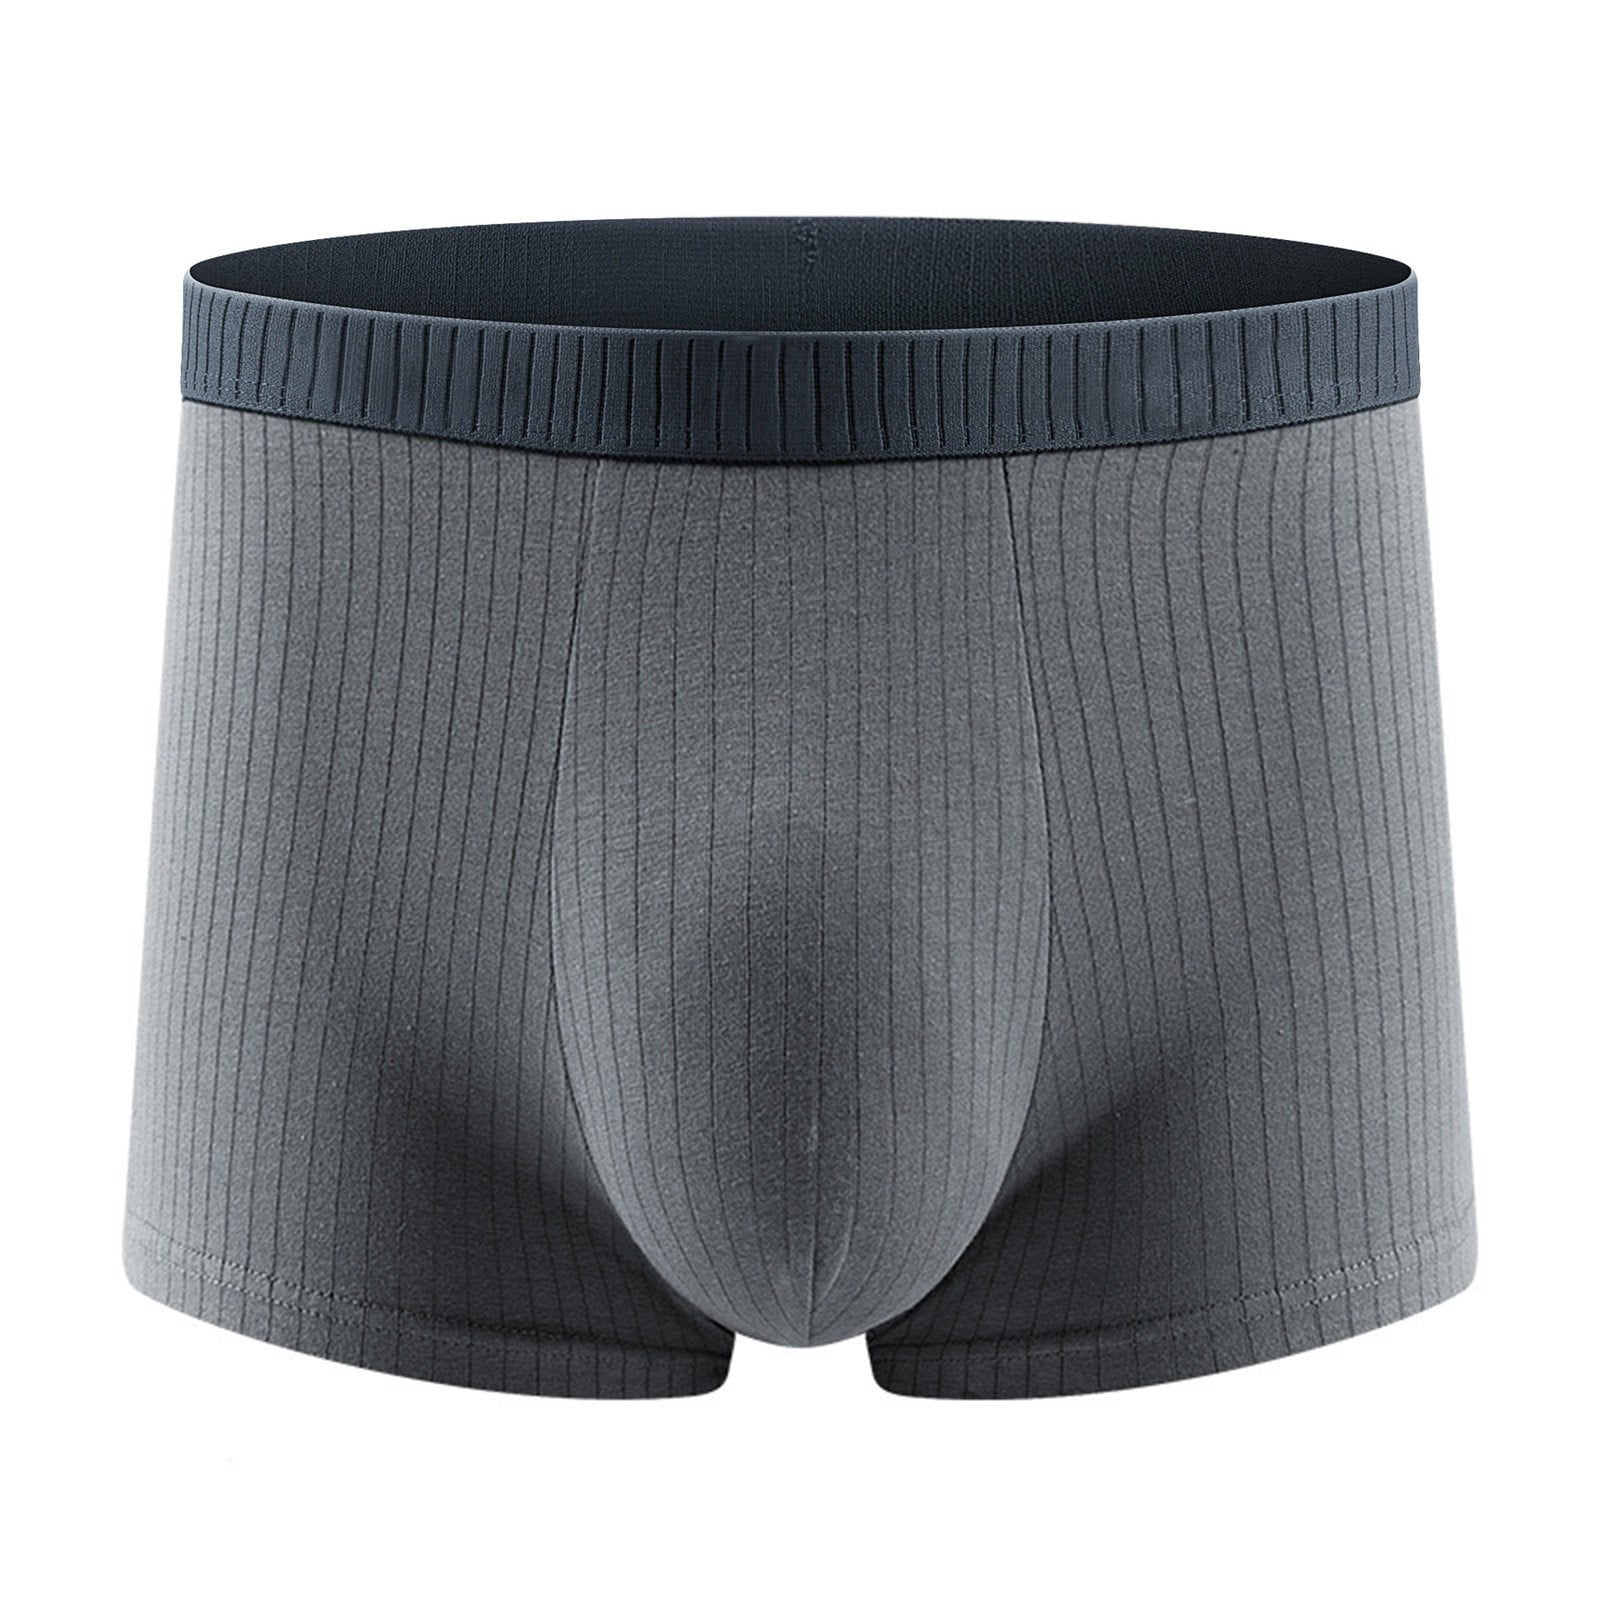 Entyinea Men's Underwear Soft and Breathable Cotton Underwear with ...